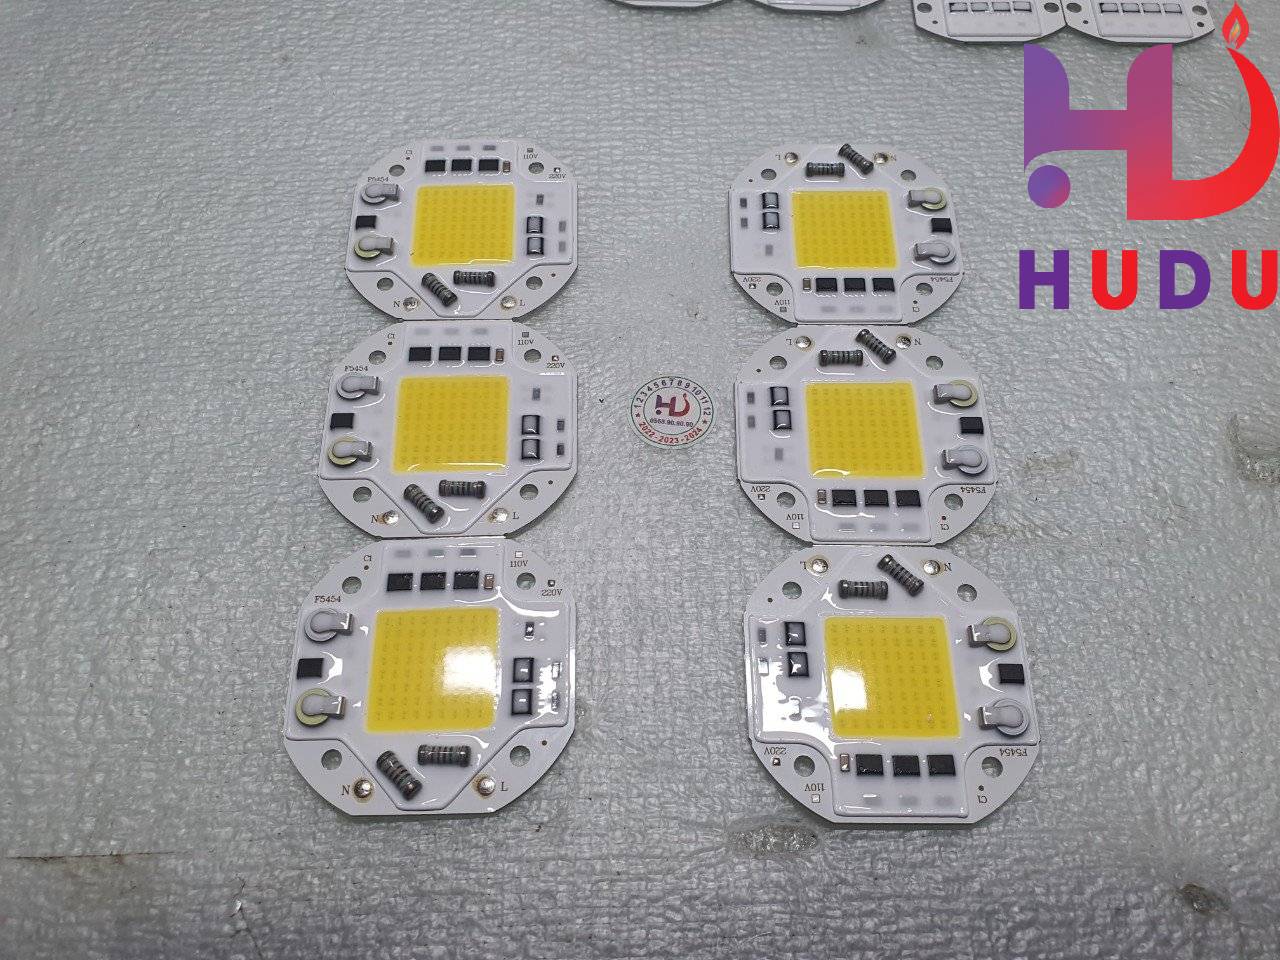 Linh kiện Hudu cung cấp chip bóng Led 50W-220V ánh sáng vàng đế nhôm vuông (54*54mm)  đảm bảo chất lượng tốt